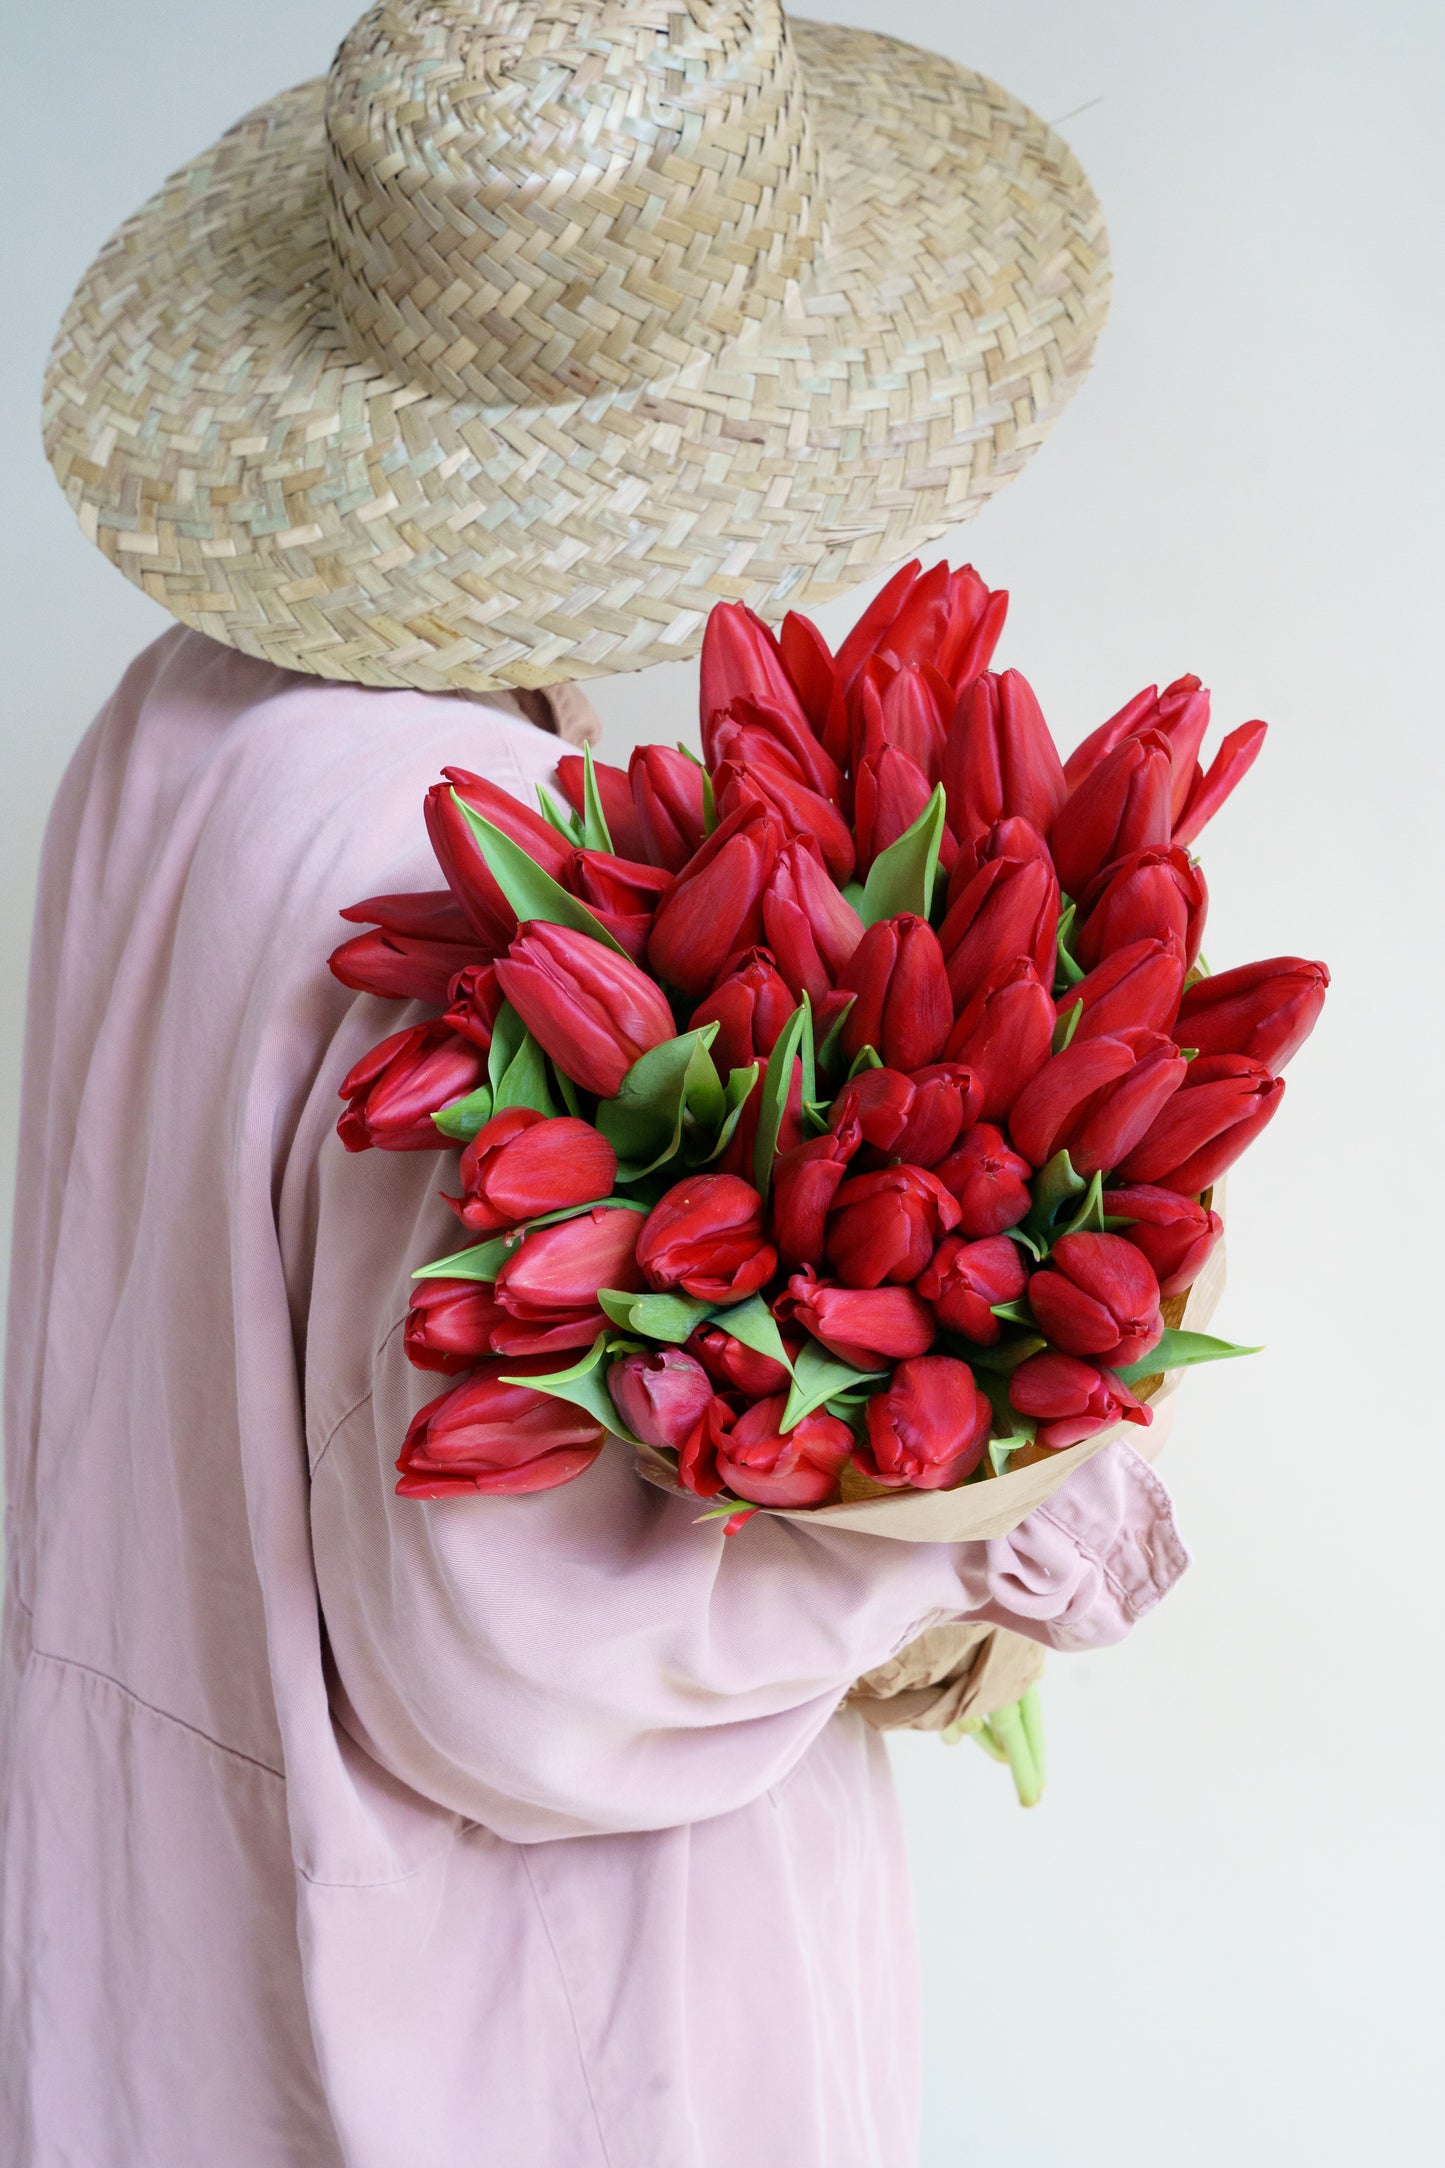 50 Rode tulpen kopen? Enorme grote bloemen unieke kwaliteit welke wij snel bezorgen!